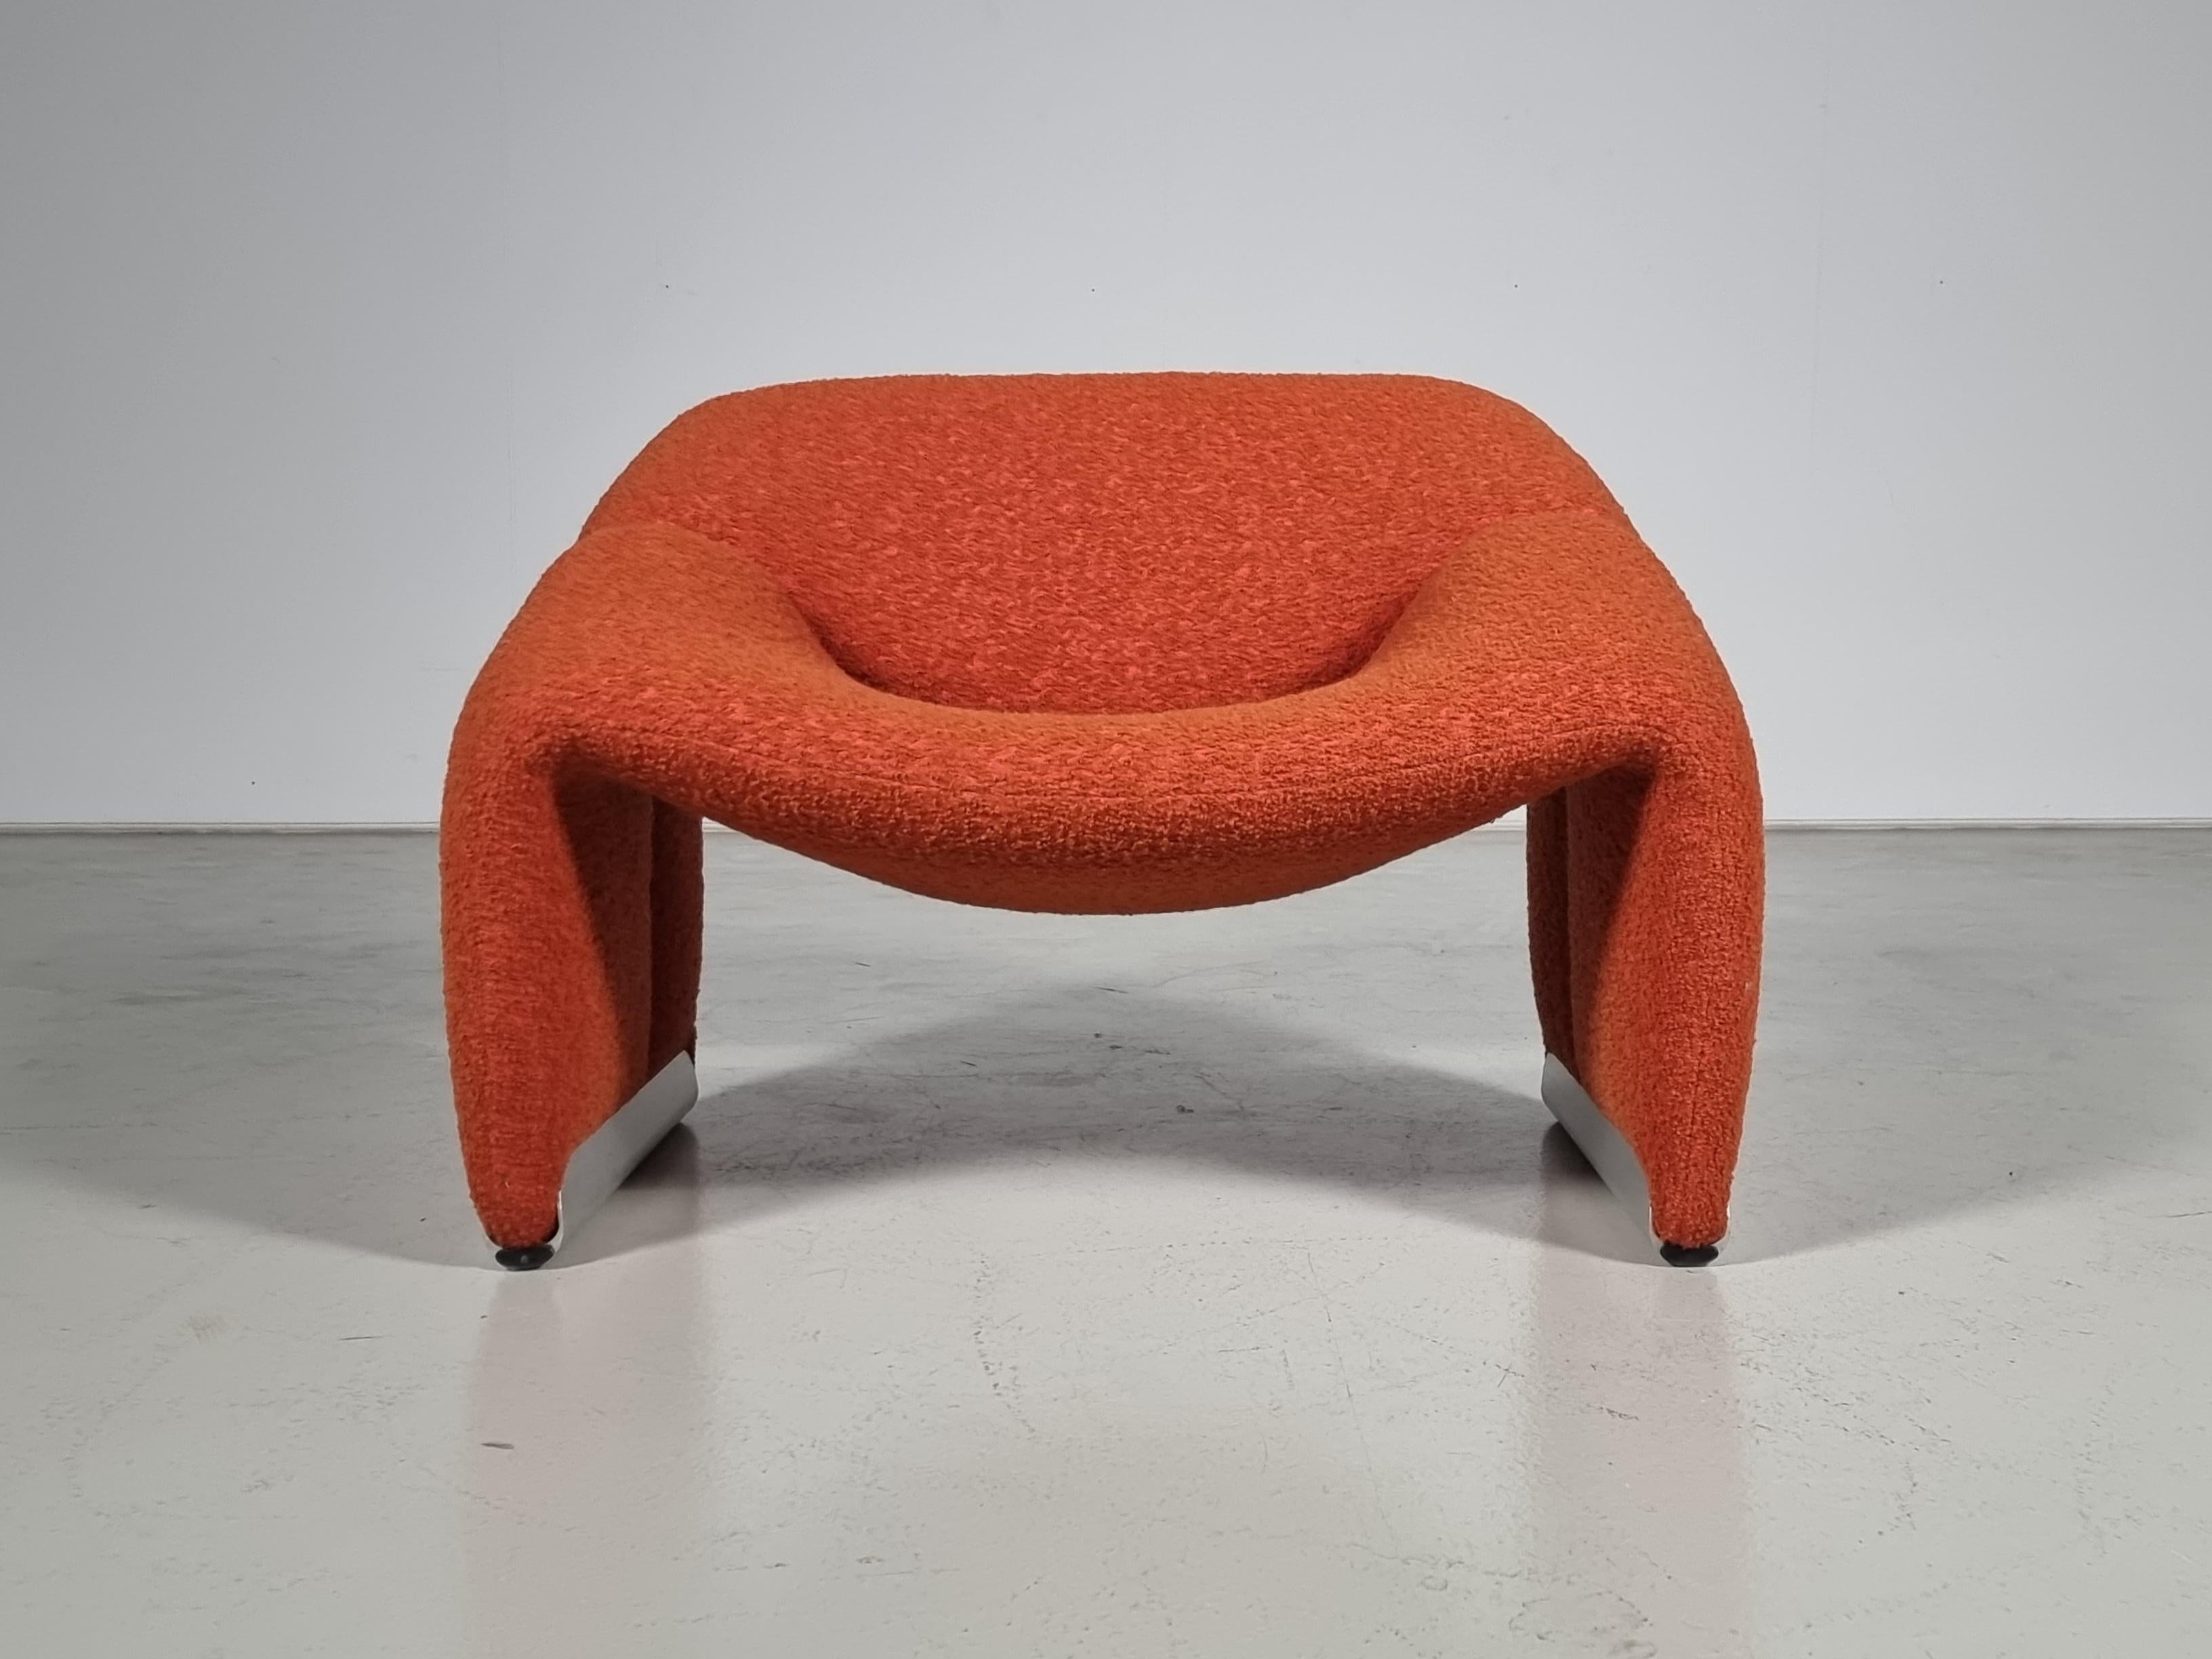 La chaise Groovy, ou F598, a été conçue en 1973 par le grand designer français Pierre Paulin pour le fabricant de meubles le plus avant-gardiste des Pays-Bas, Artifort. Leur compacité alliée à un grand confort et, bien sûr, à un look iconique ont